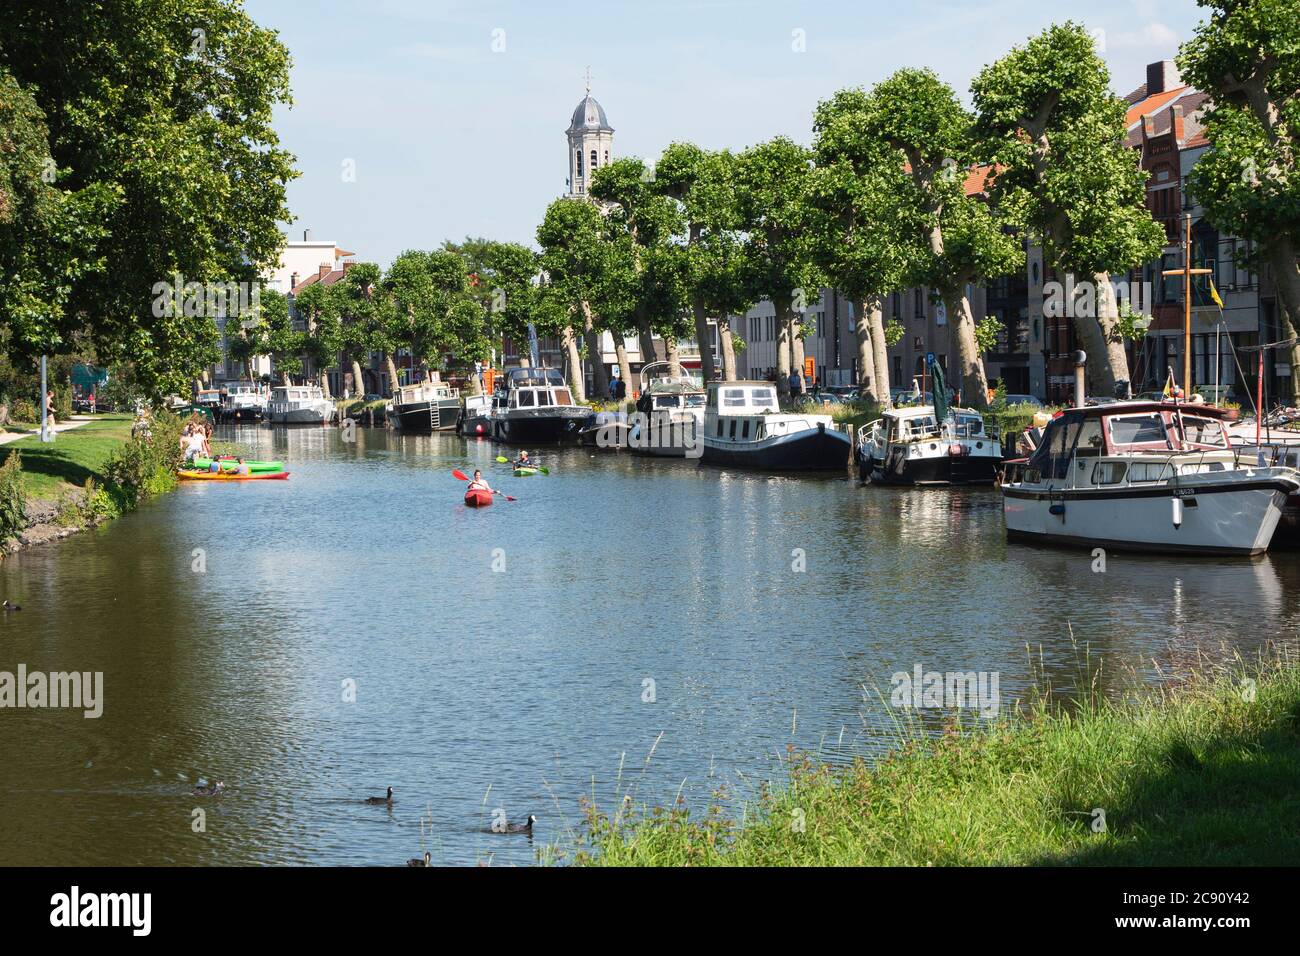 Lokeren, Belgique, 13 juillet 2020, les gens naviguent dans un canoë à côté de bateaux de plaisance amarrés dans le centre-ville Banque D'Images